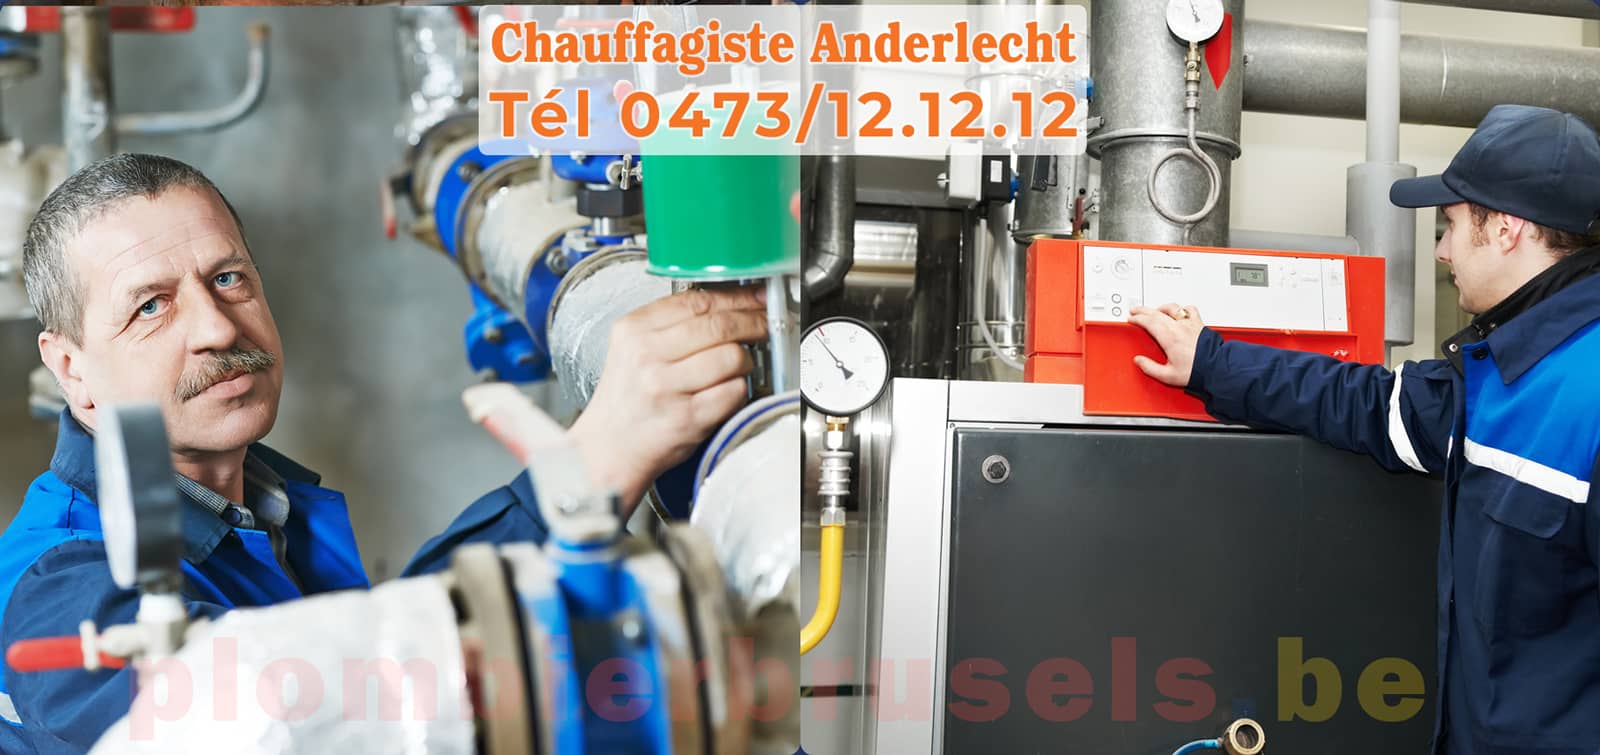 Chauffagiste Anderlecht service de Chauffage tél 0473/12.12.12